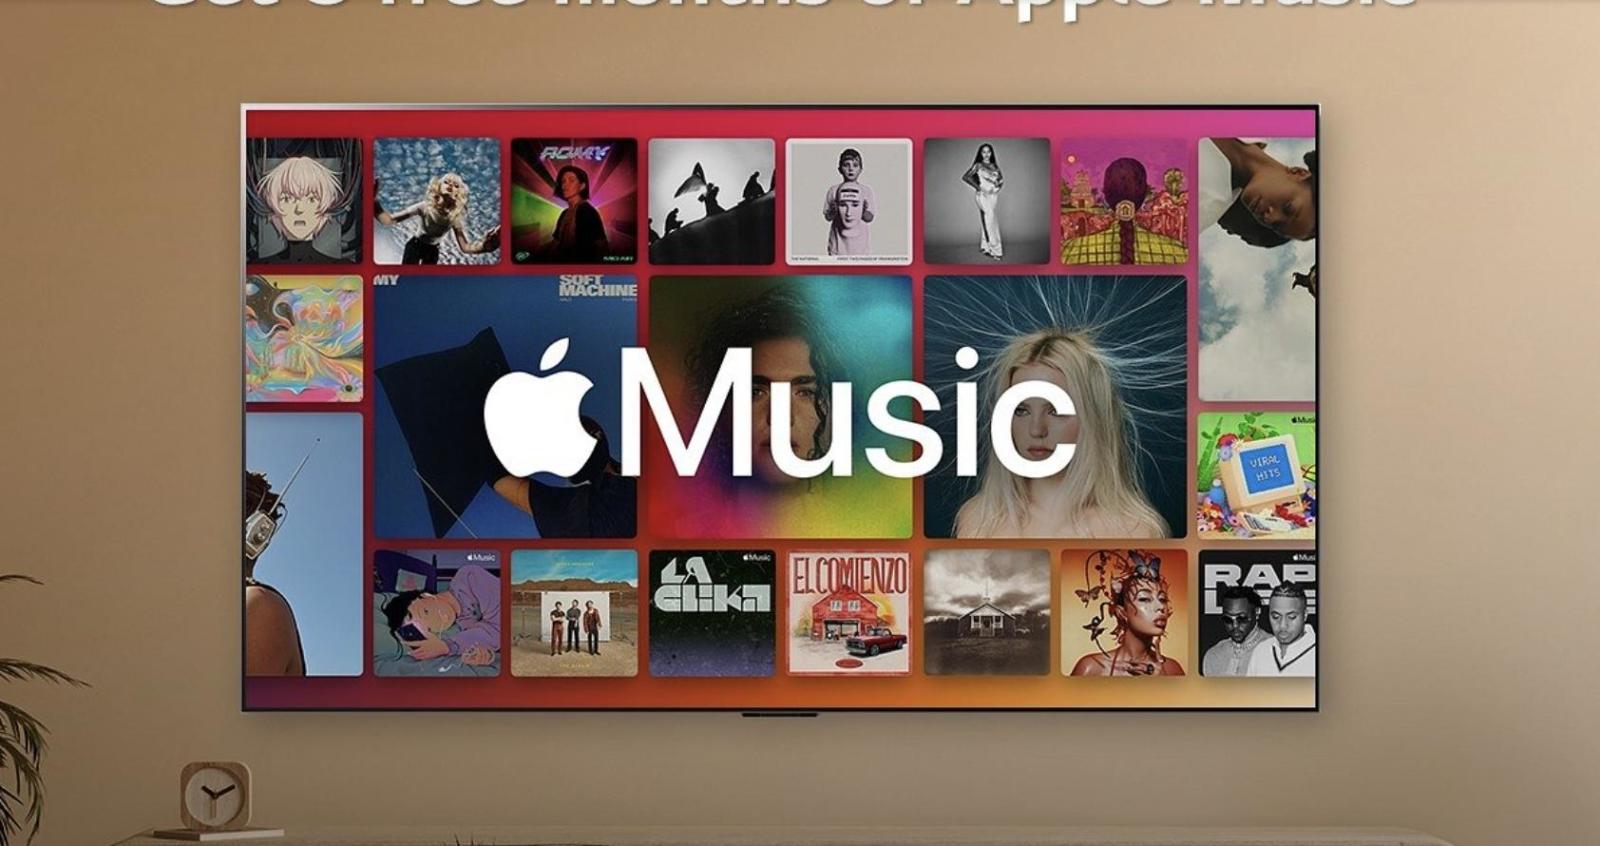 Telewizory LG oferują najwyższą jakość dźwięku dzięki Apple Music i brzmieniu przestrzennemu z Dolby Atmos